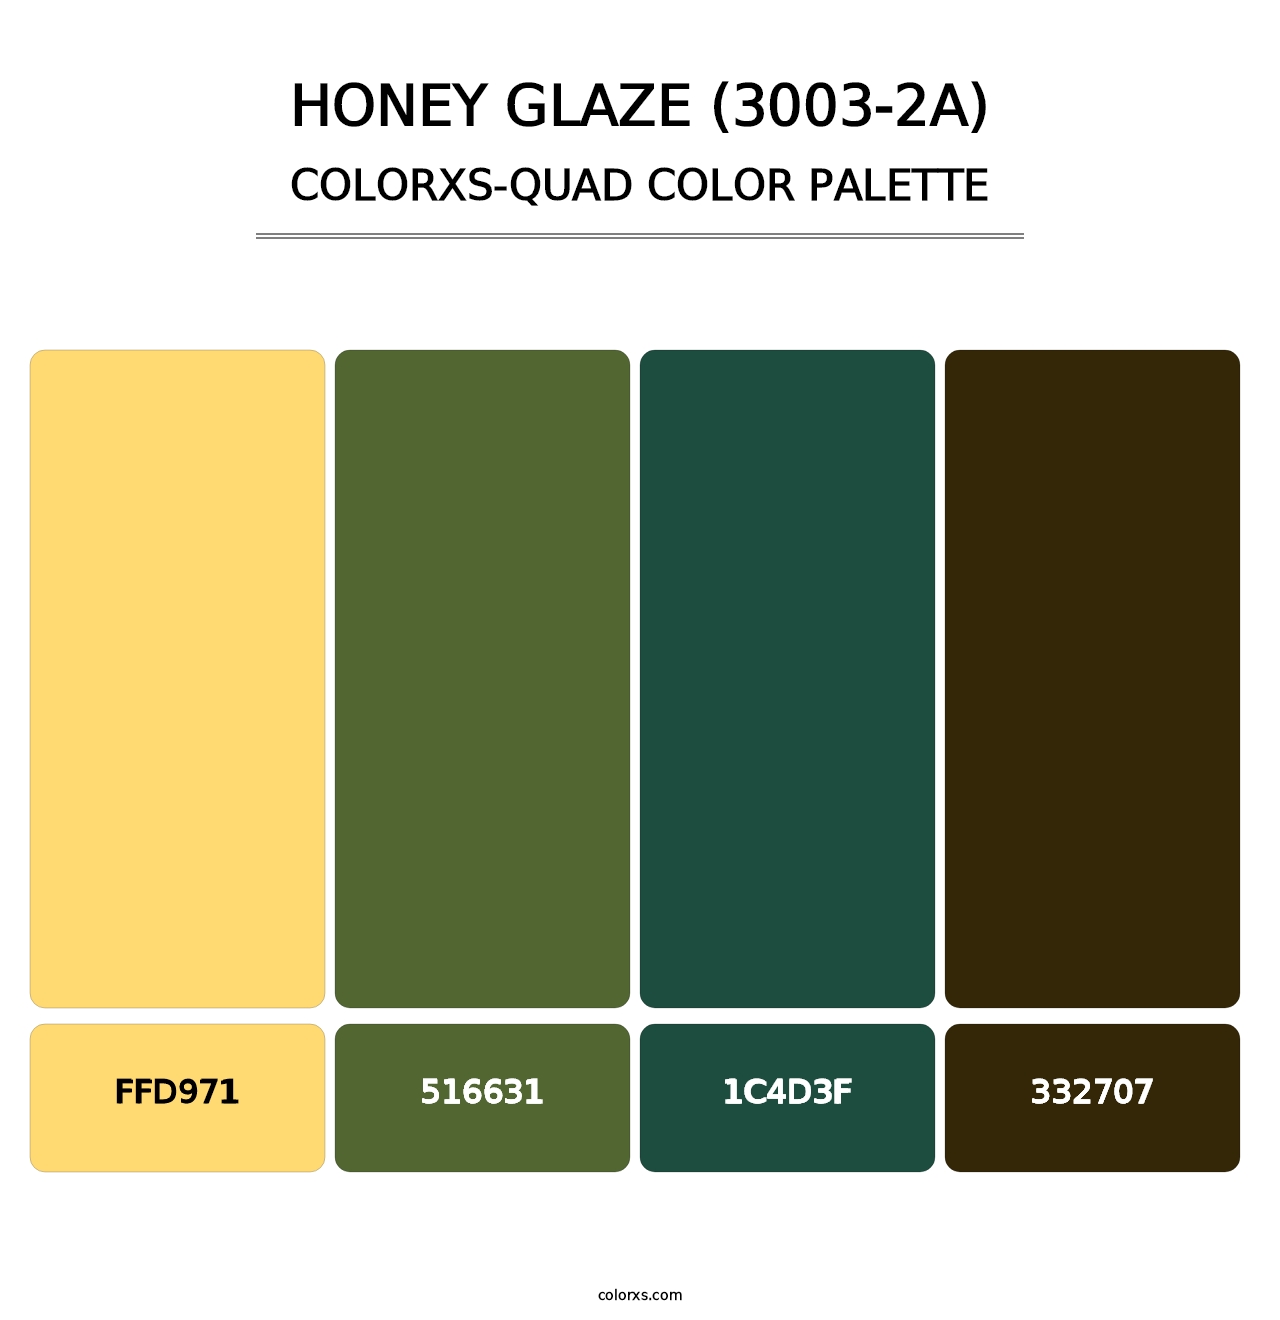 Honey Glaze (3003-2A) - Colorxs Quad Palette